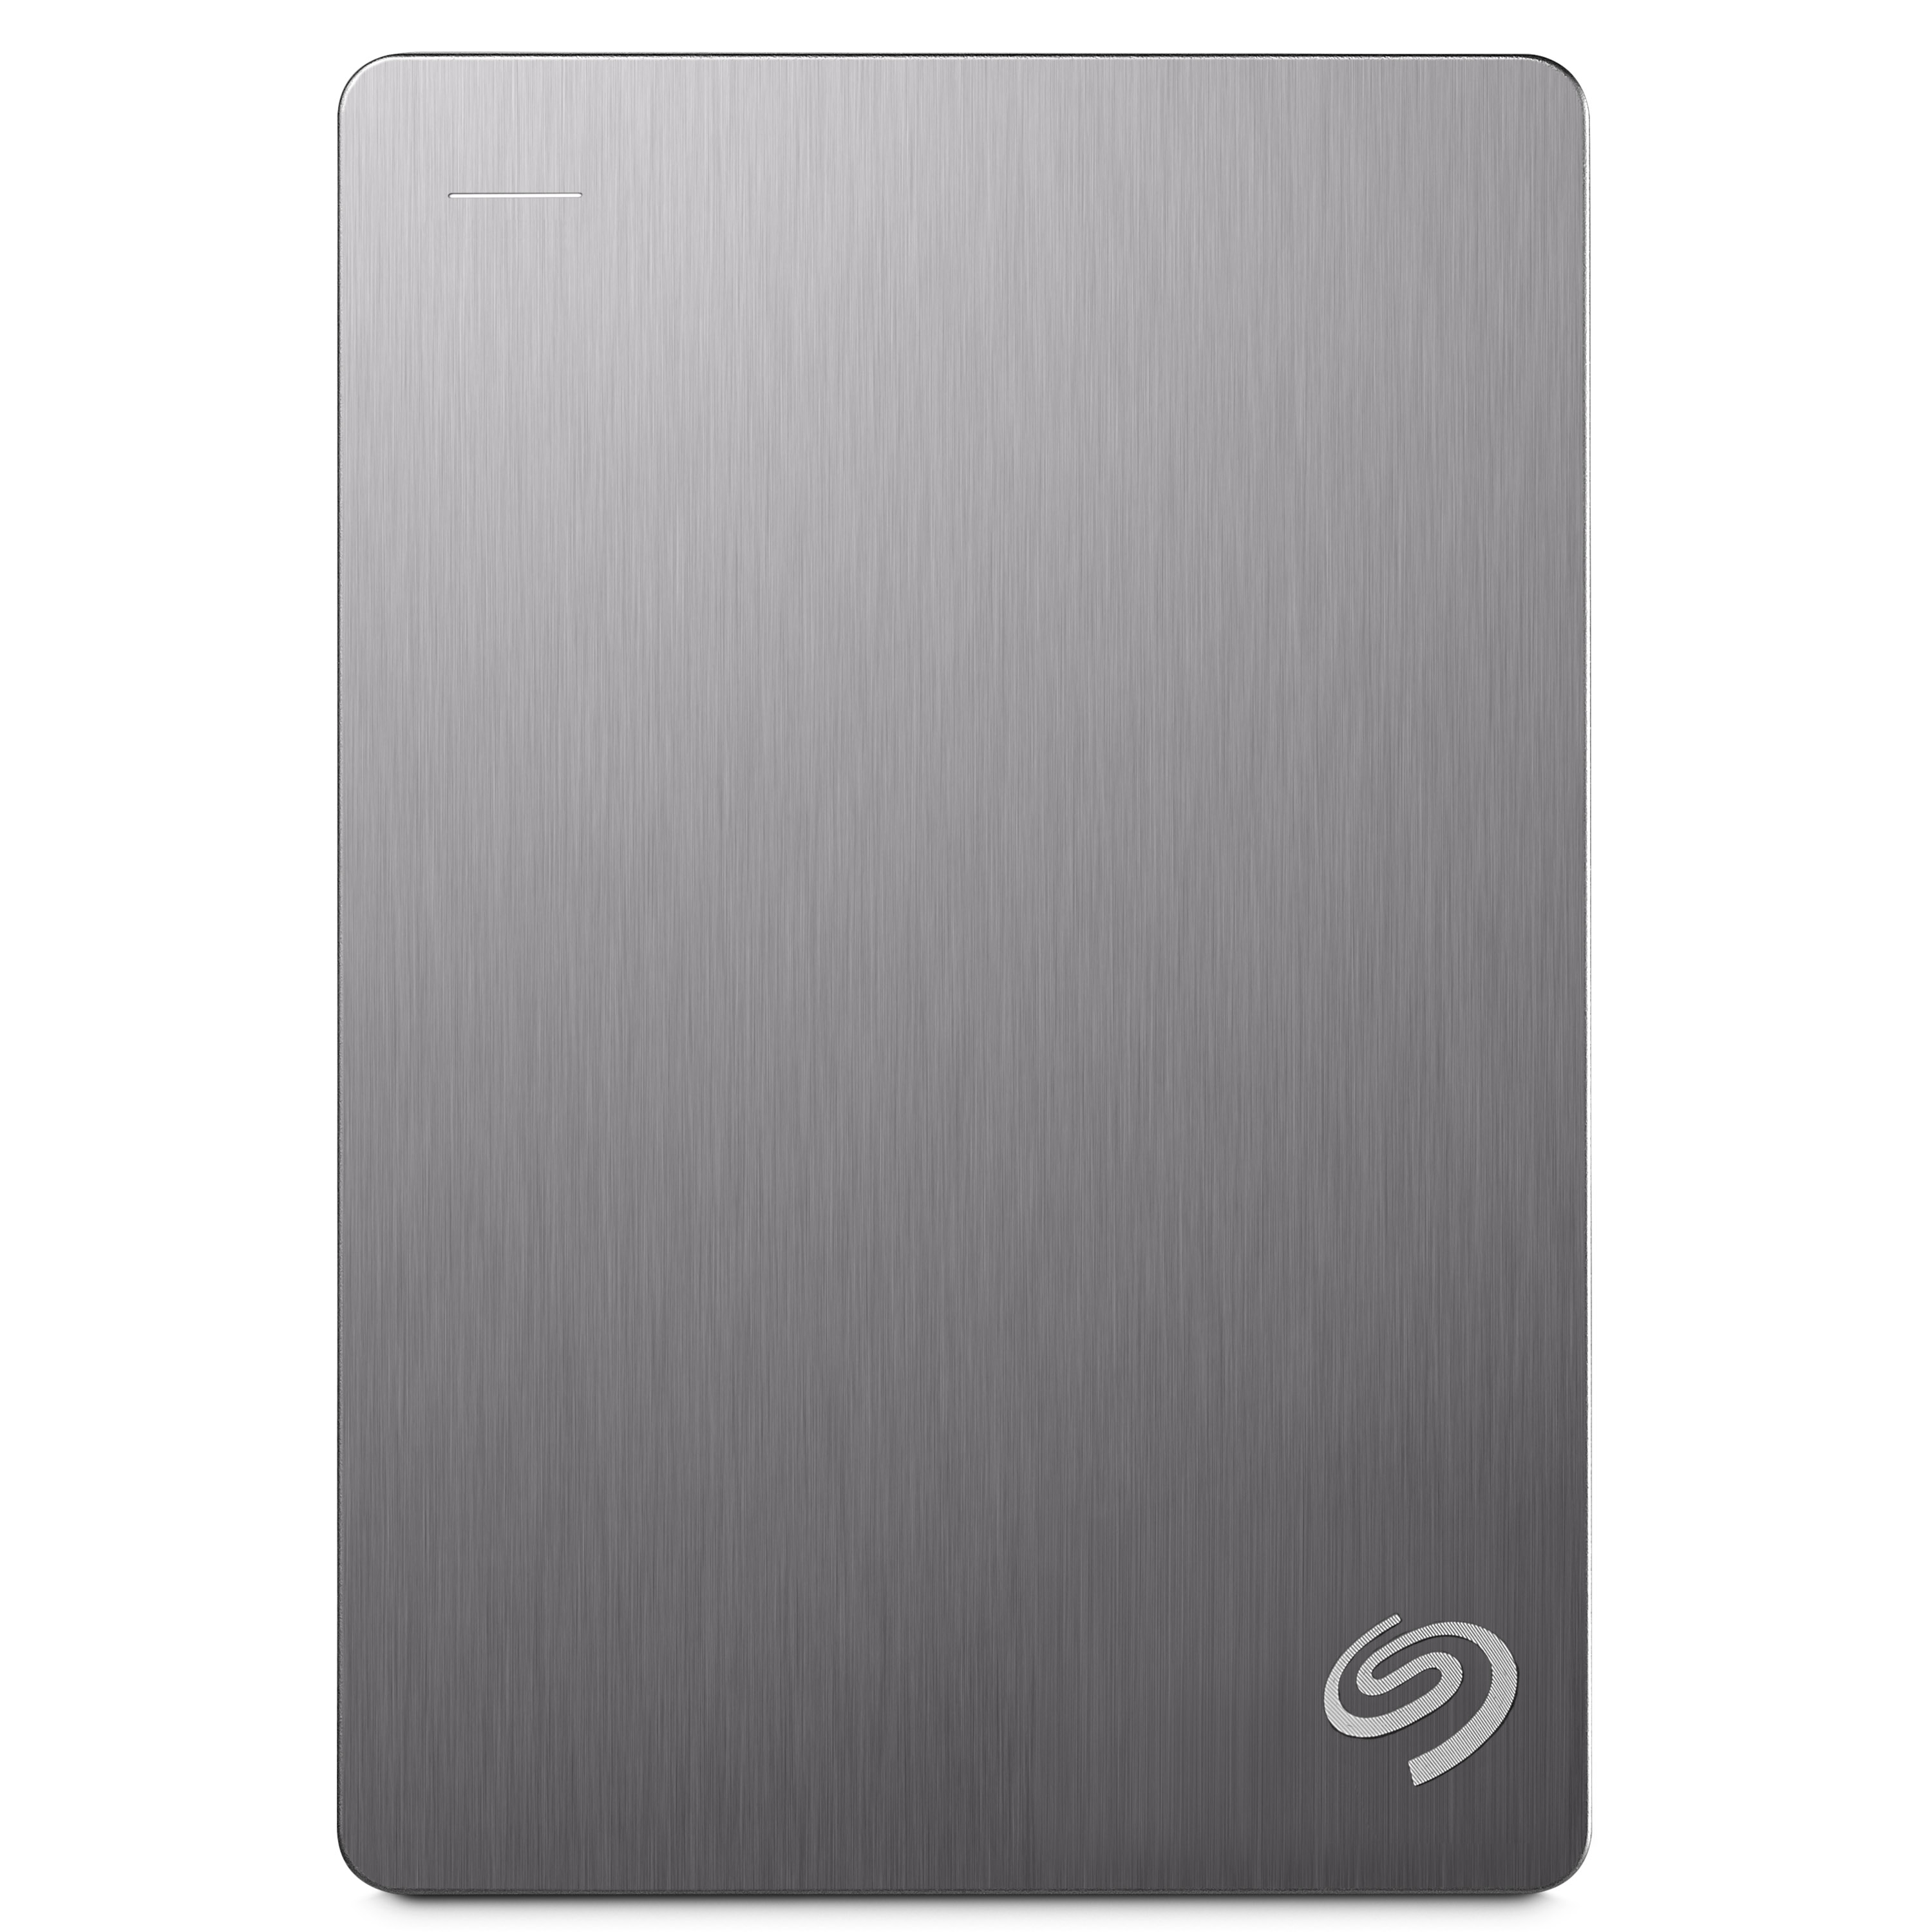 希捷(Seagate) Backup Plus睿品 4TB 2.5英寸USB3.0移动硬盘 STDR4000301 银色高清大图